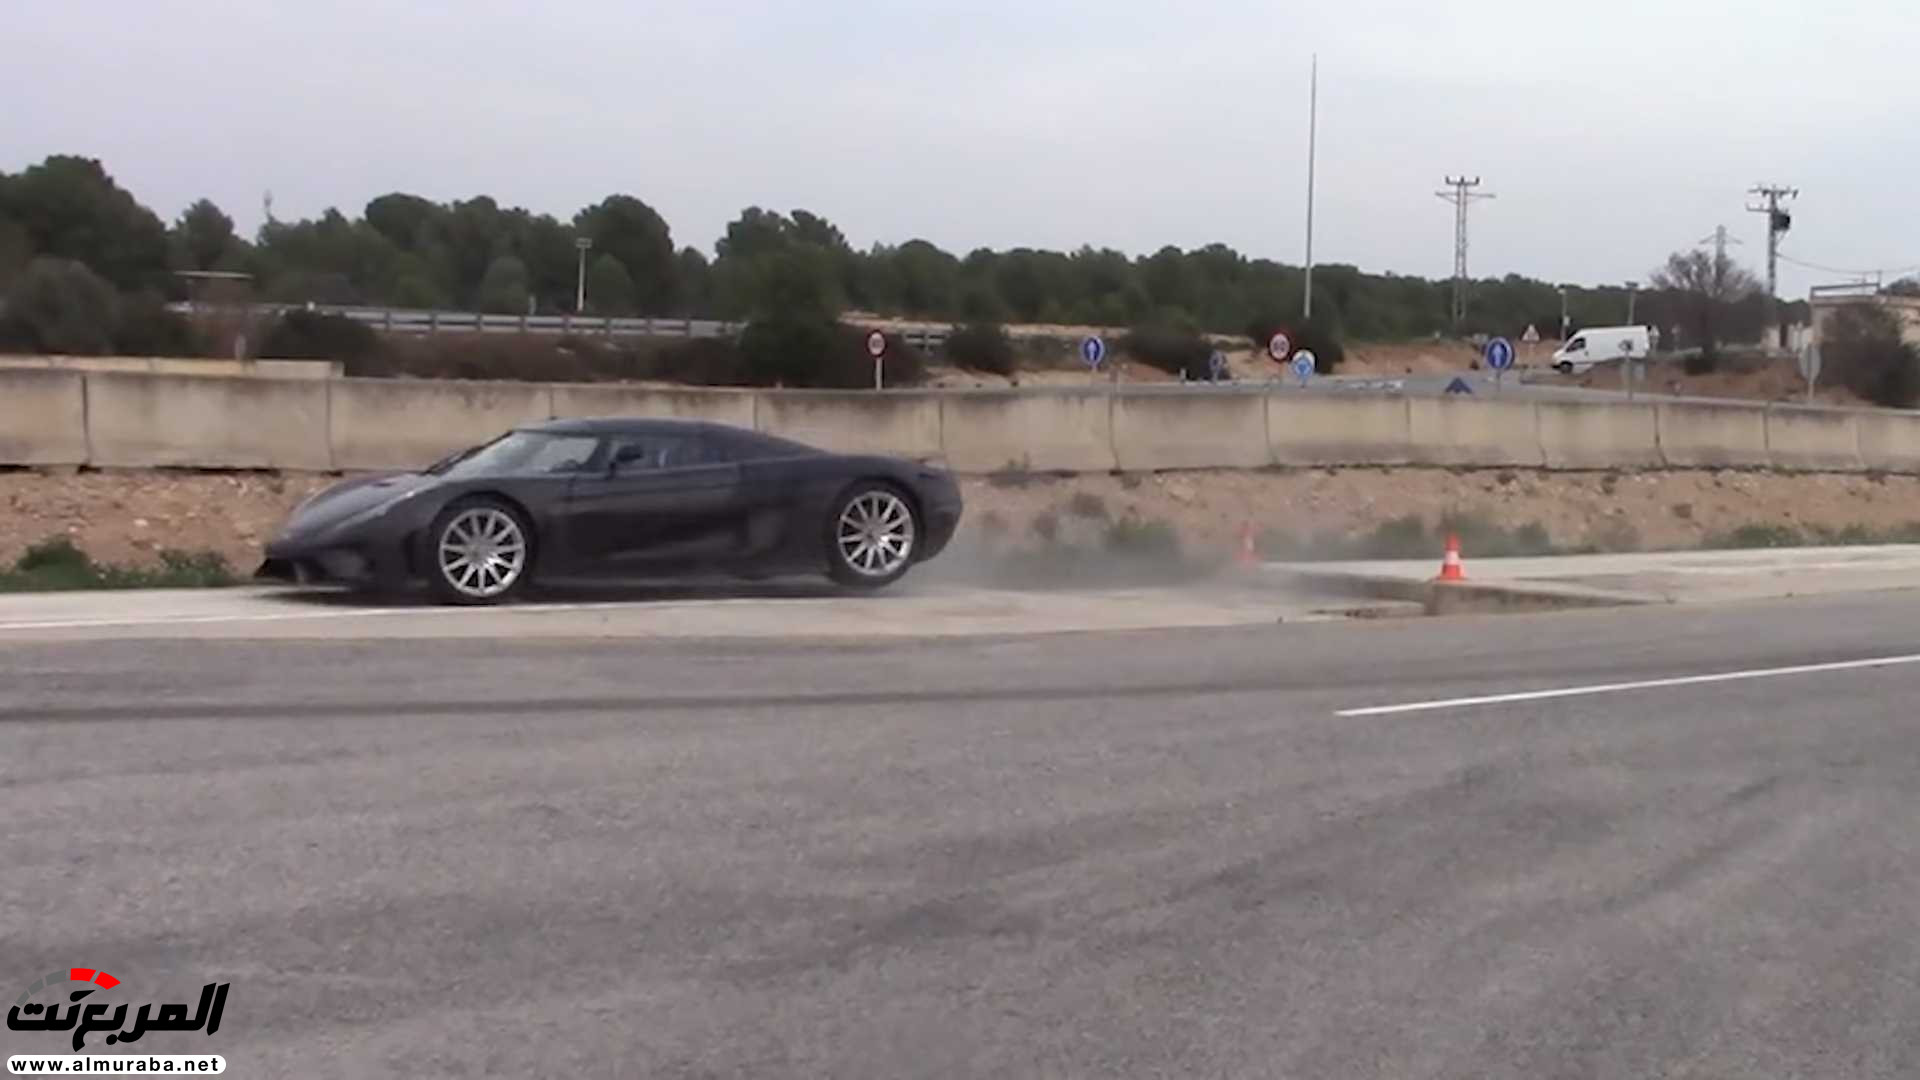 "بالفيديو" اختبار تصادم سيارة كوينيجسيج بقيمة 7.5 مليون ريال! 30